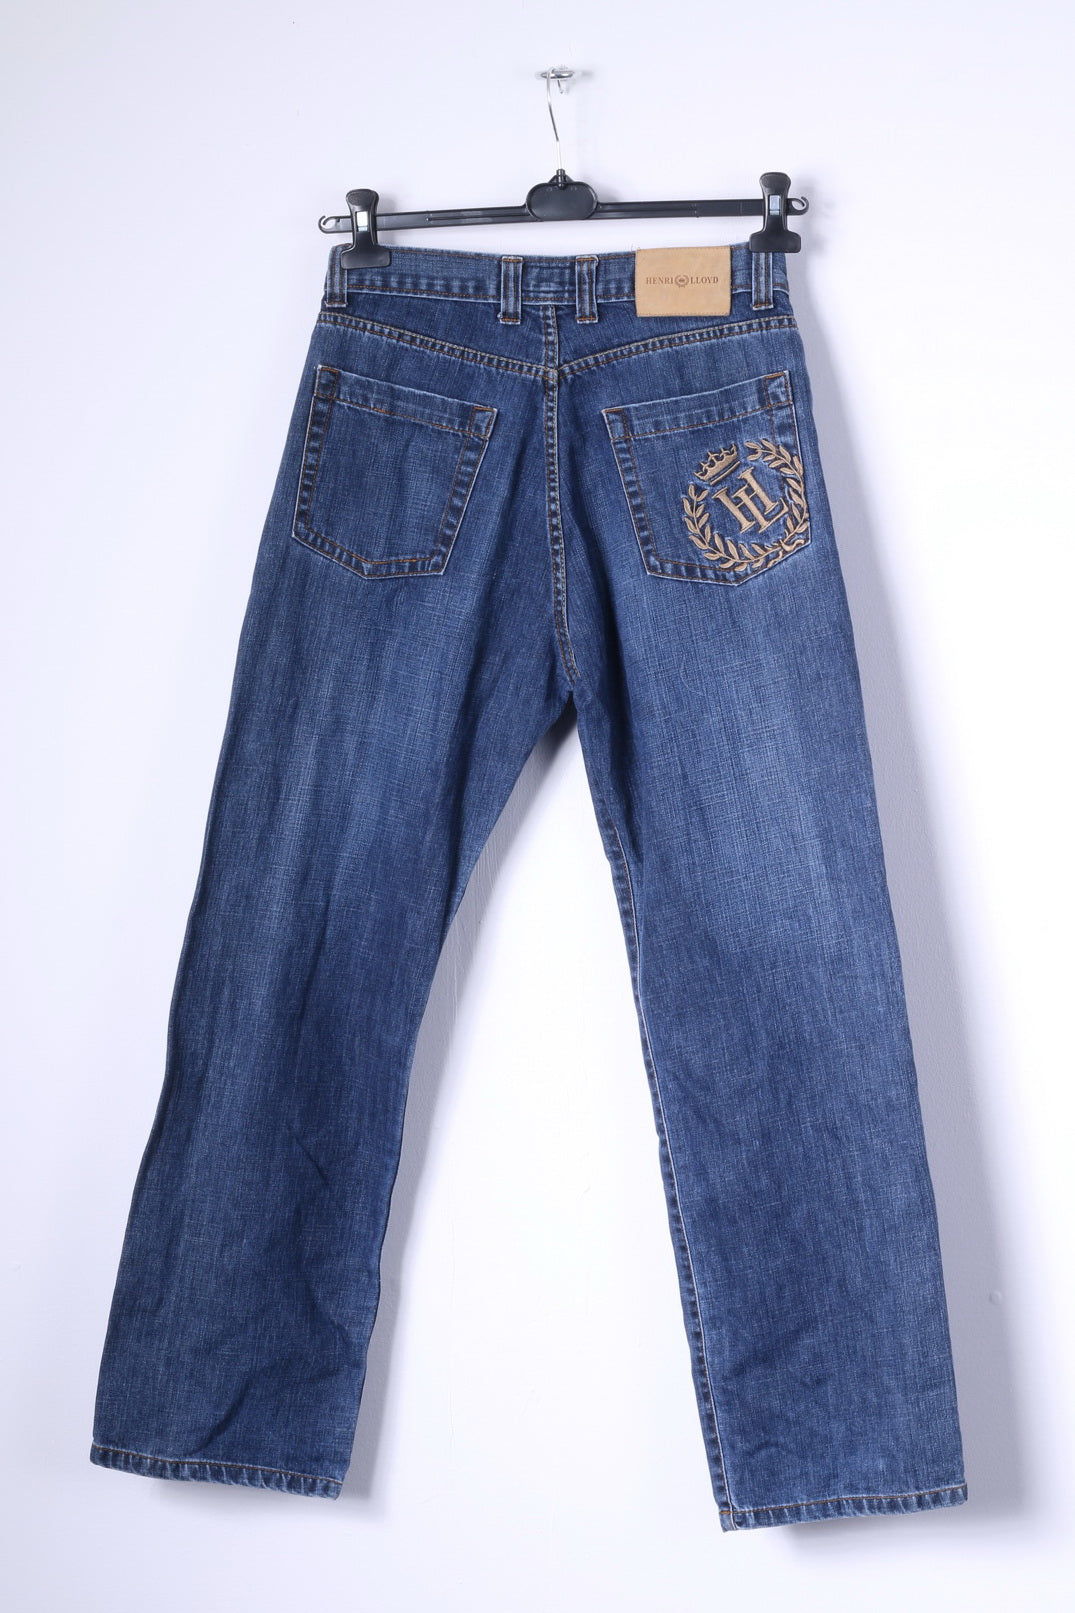 Problemer overdrivelse krans Henri Lloyd Mens 30 S Trousers Blue Jeans Cotton Denim Straight Leg Pa –  RetrospectClothes